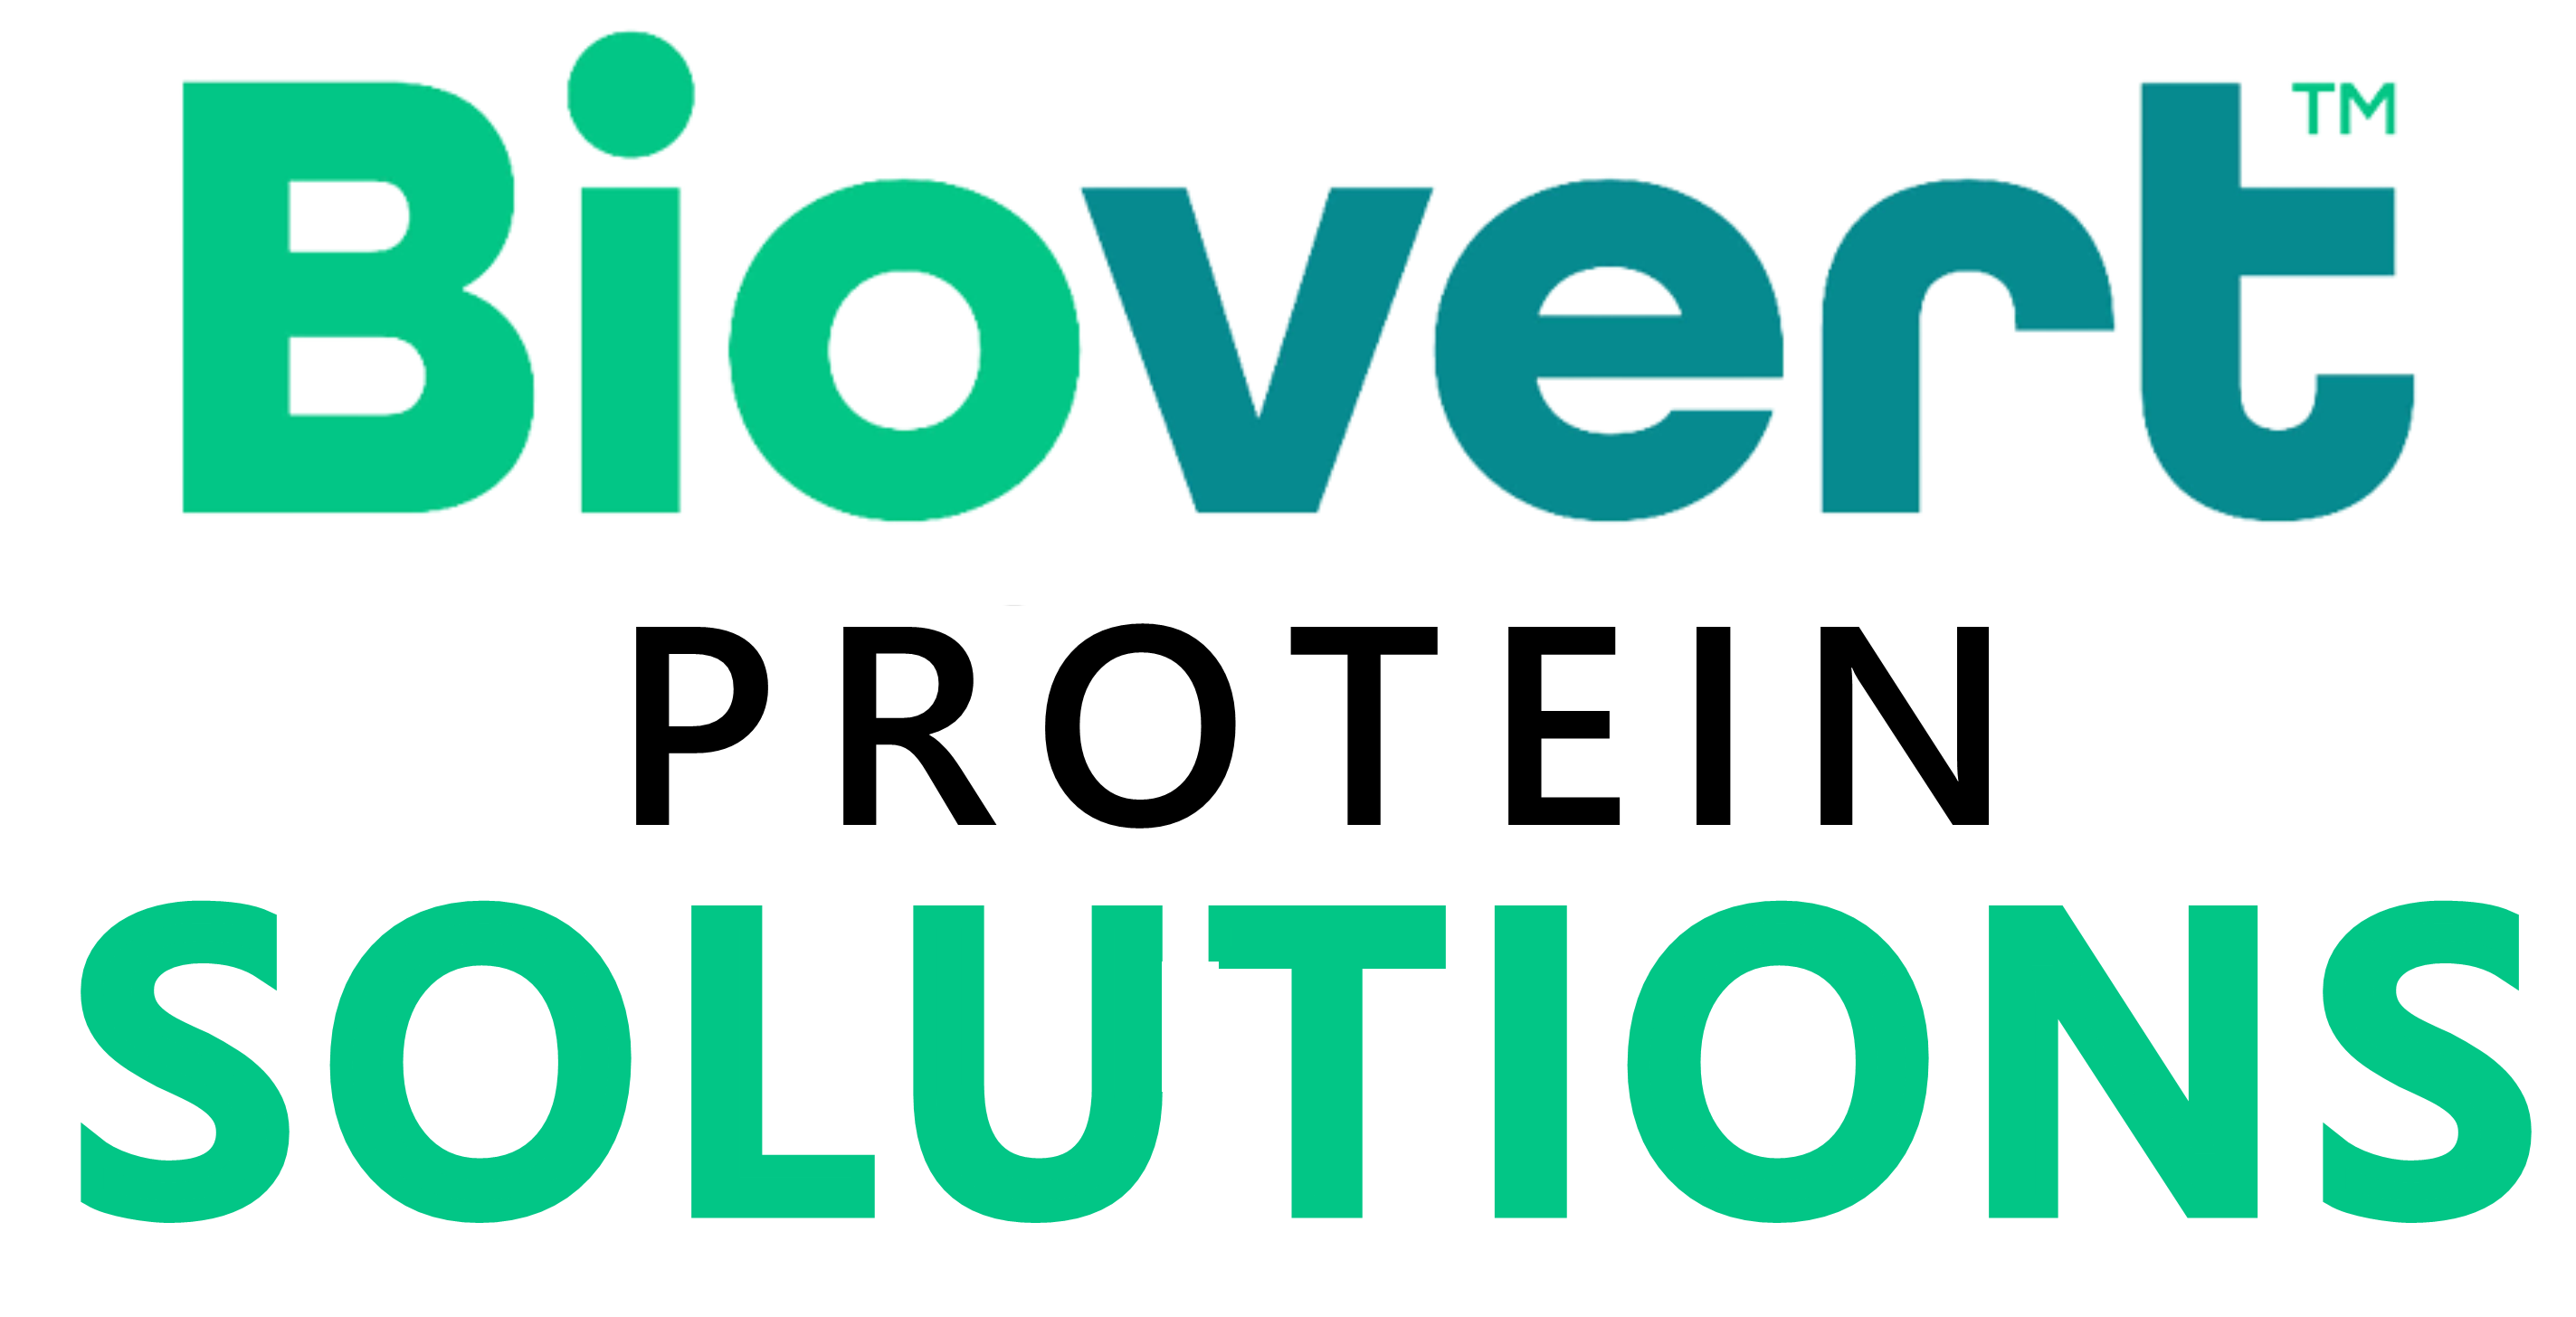 Biovert Protein